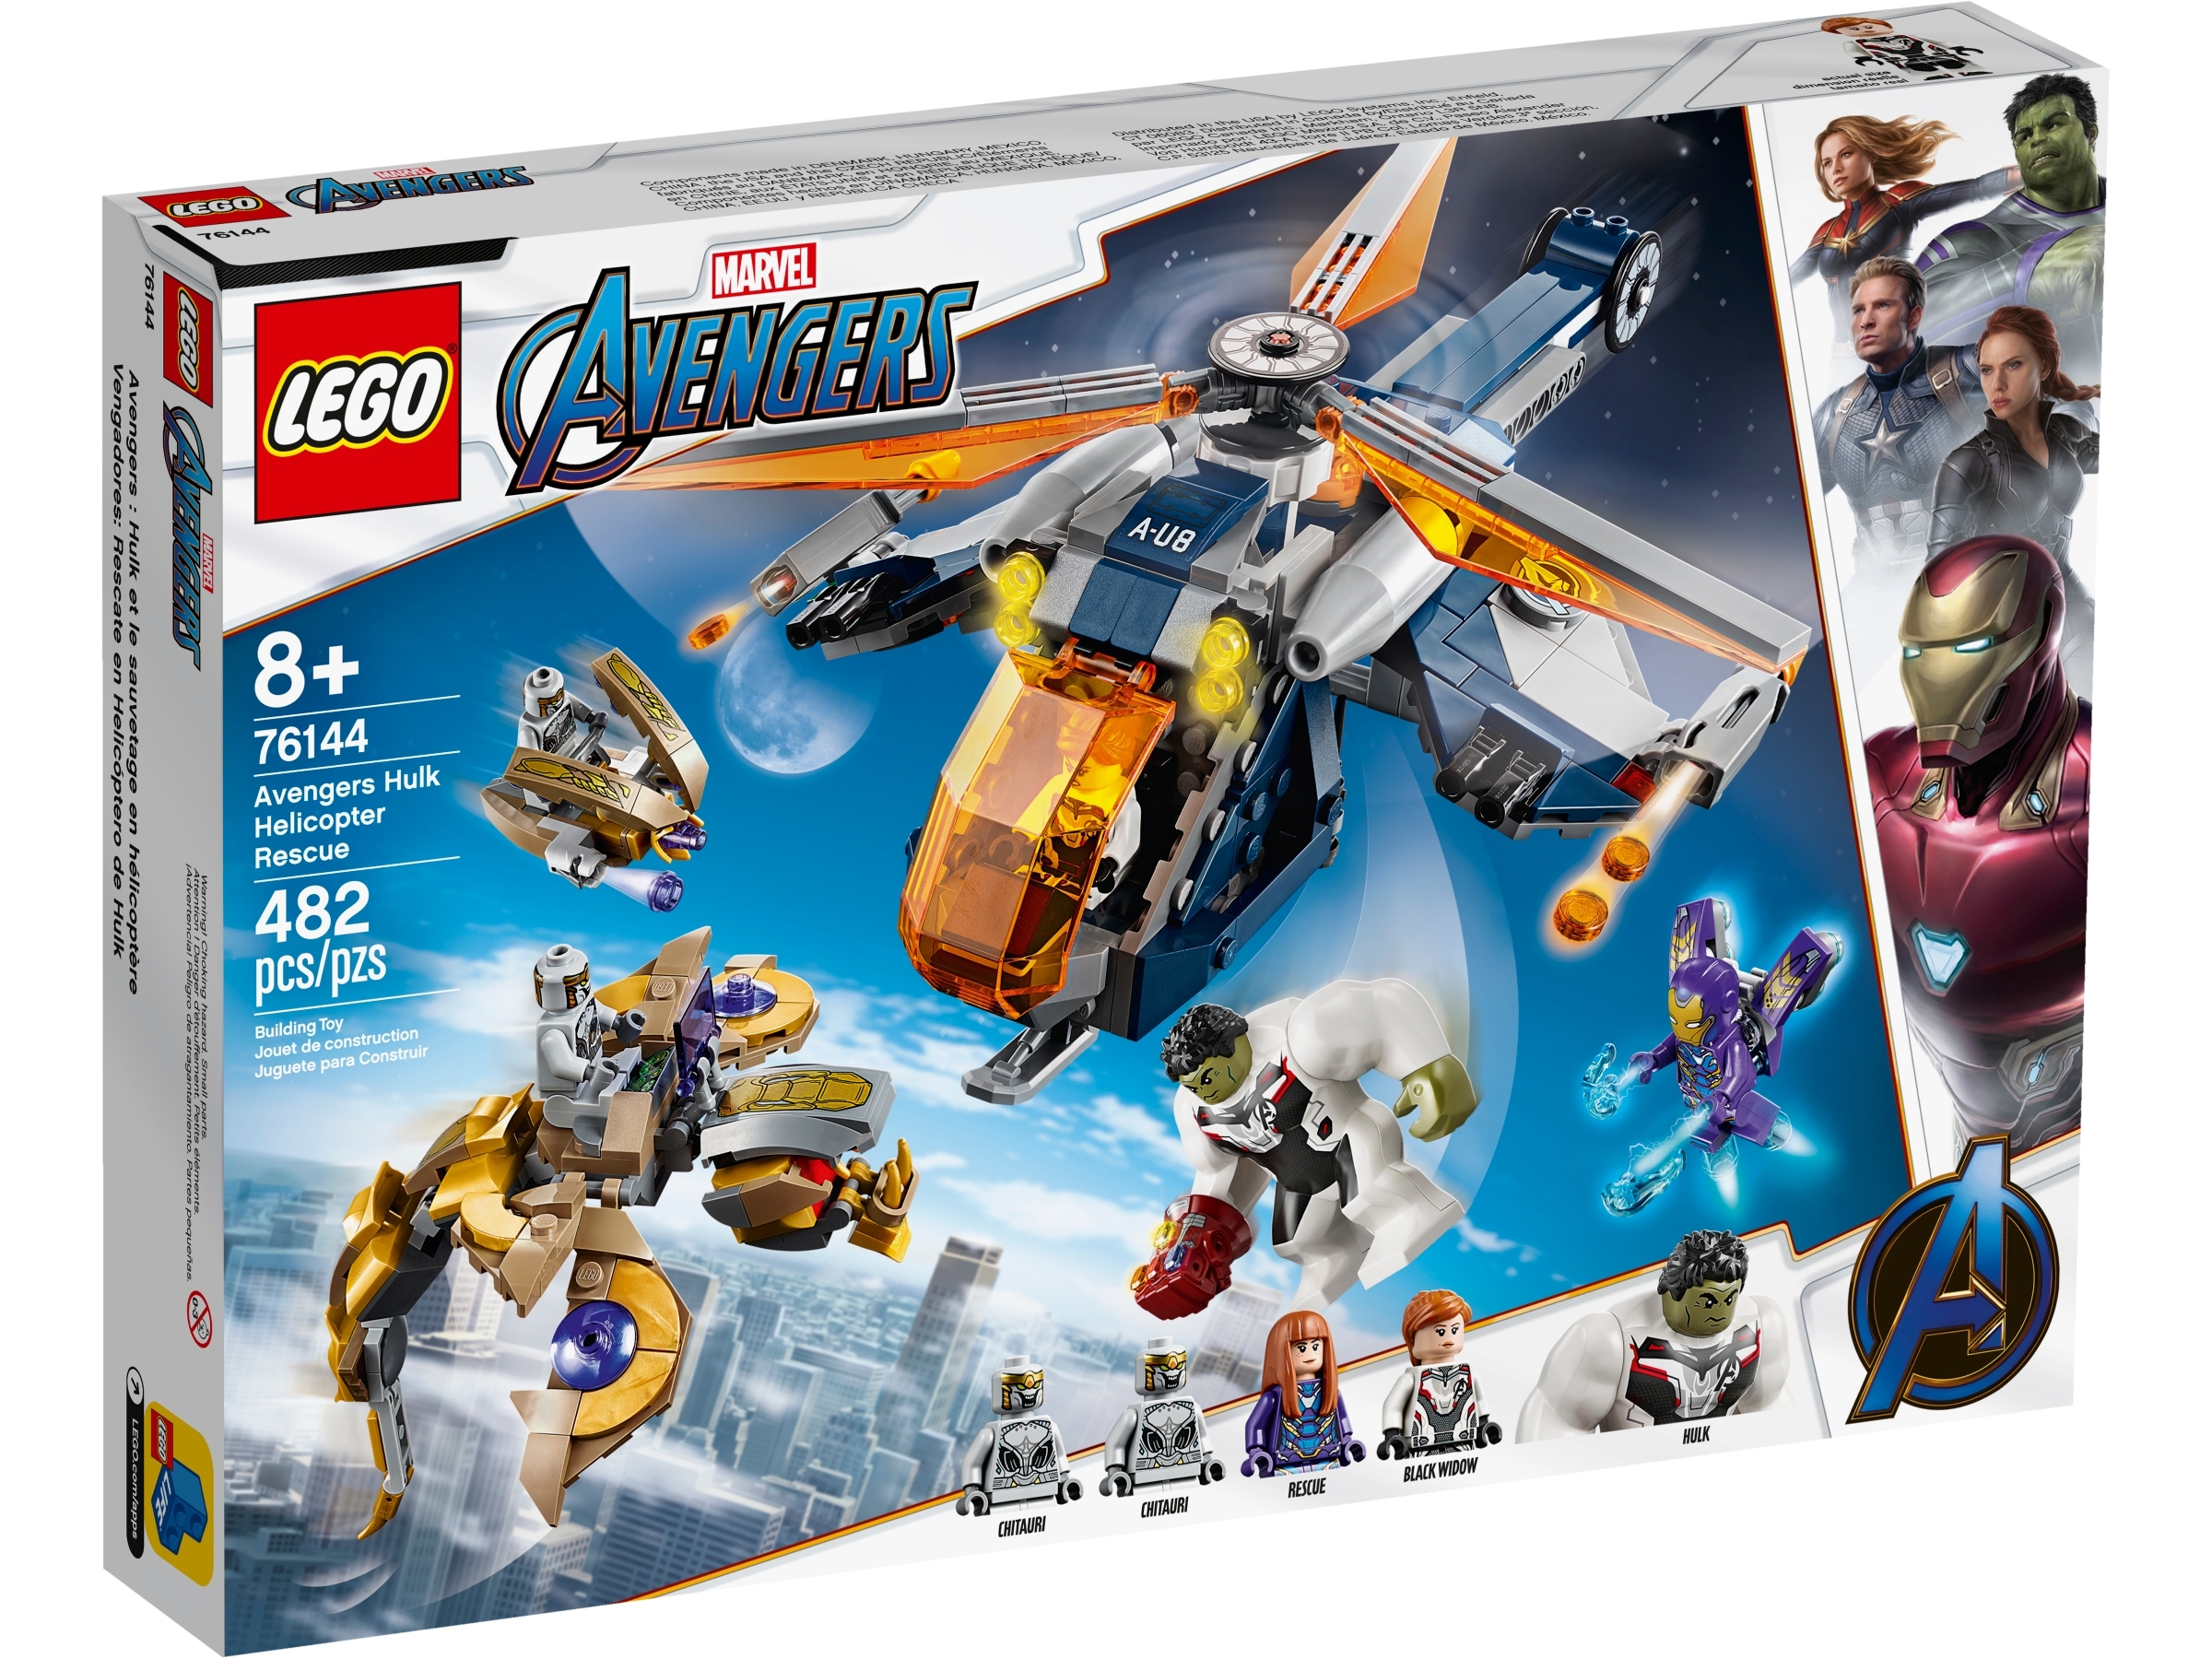 Lego 76144 76131 6 Infinity Stones lot Avengers Endgame Marvel Super Heroes